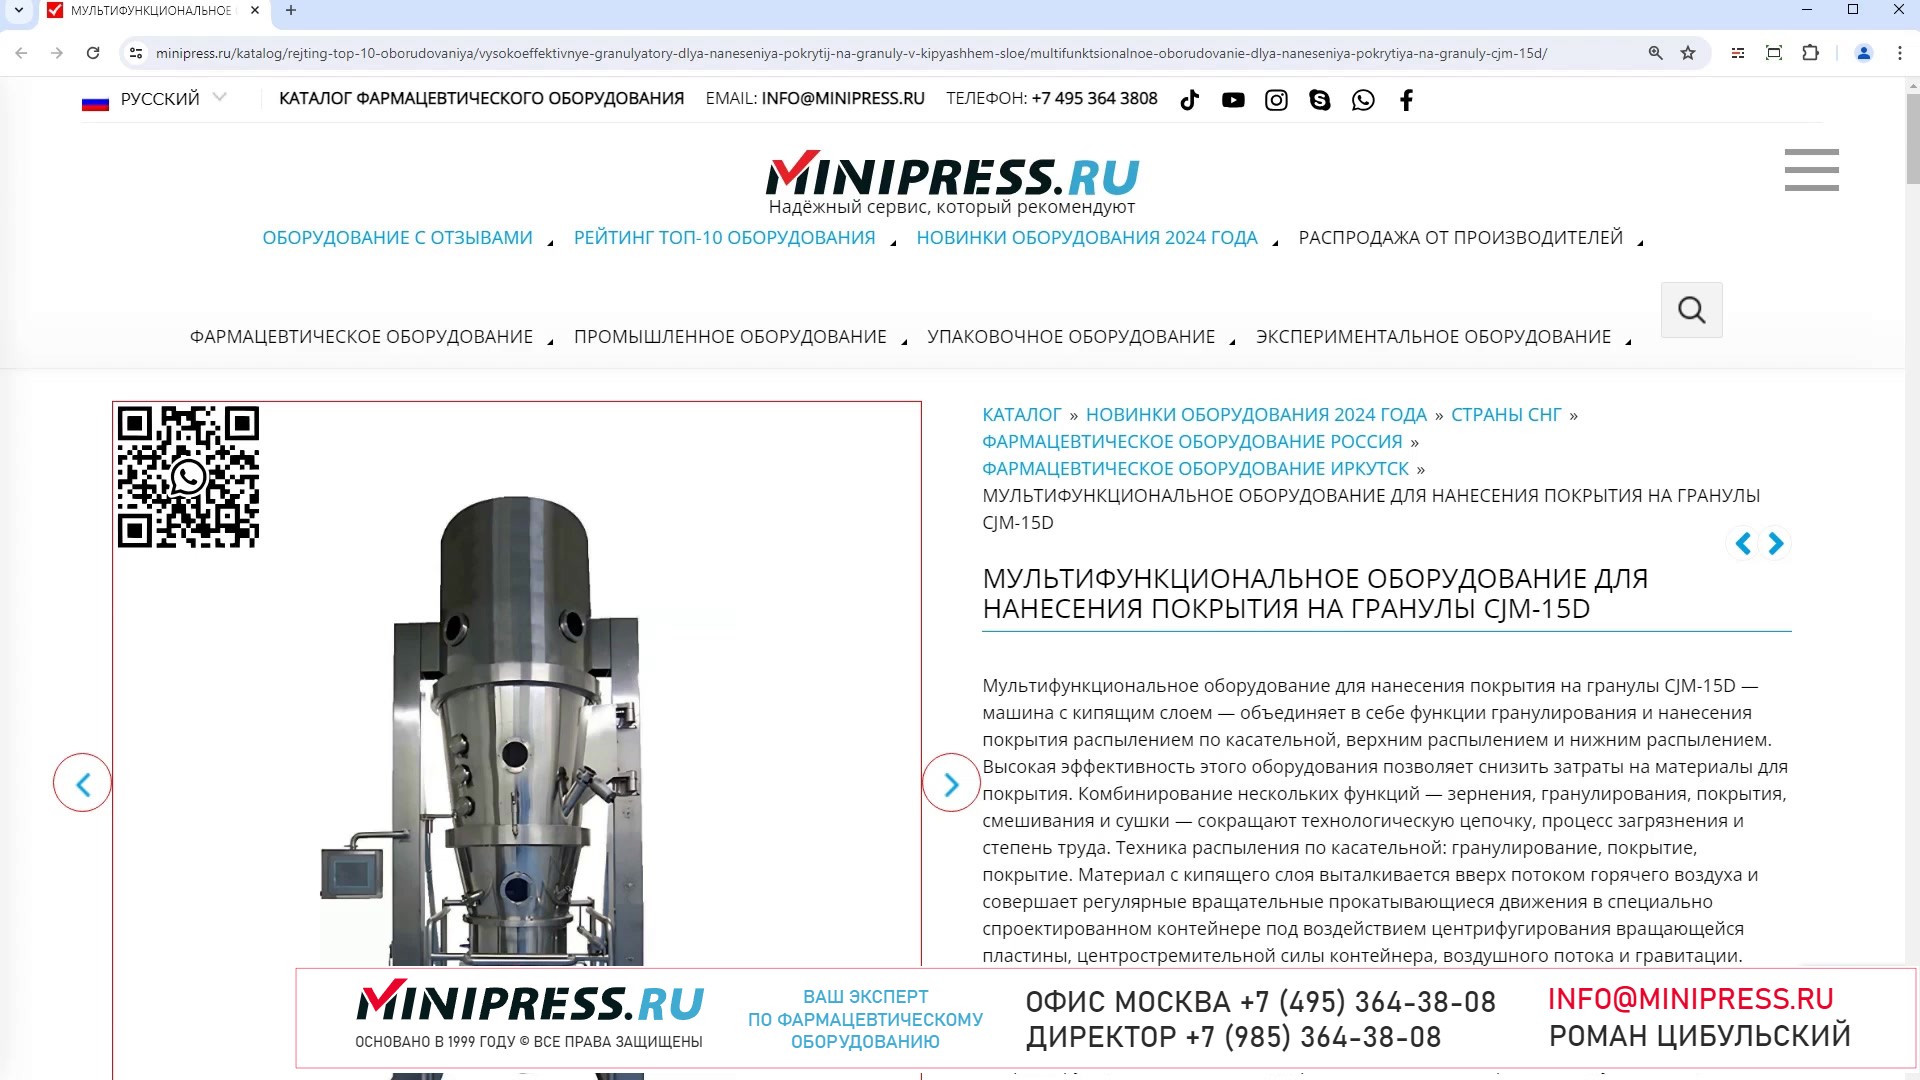 Minipress.ru Мультифункциональное оборудование для нанесения покрытия на гранулы CJM-15D